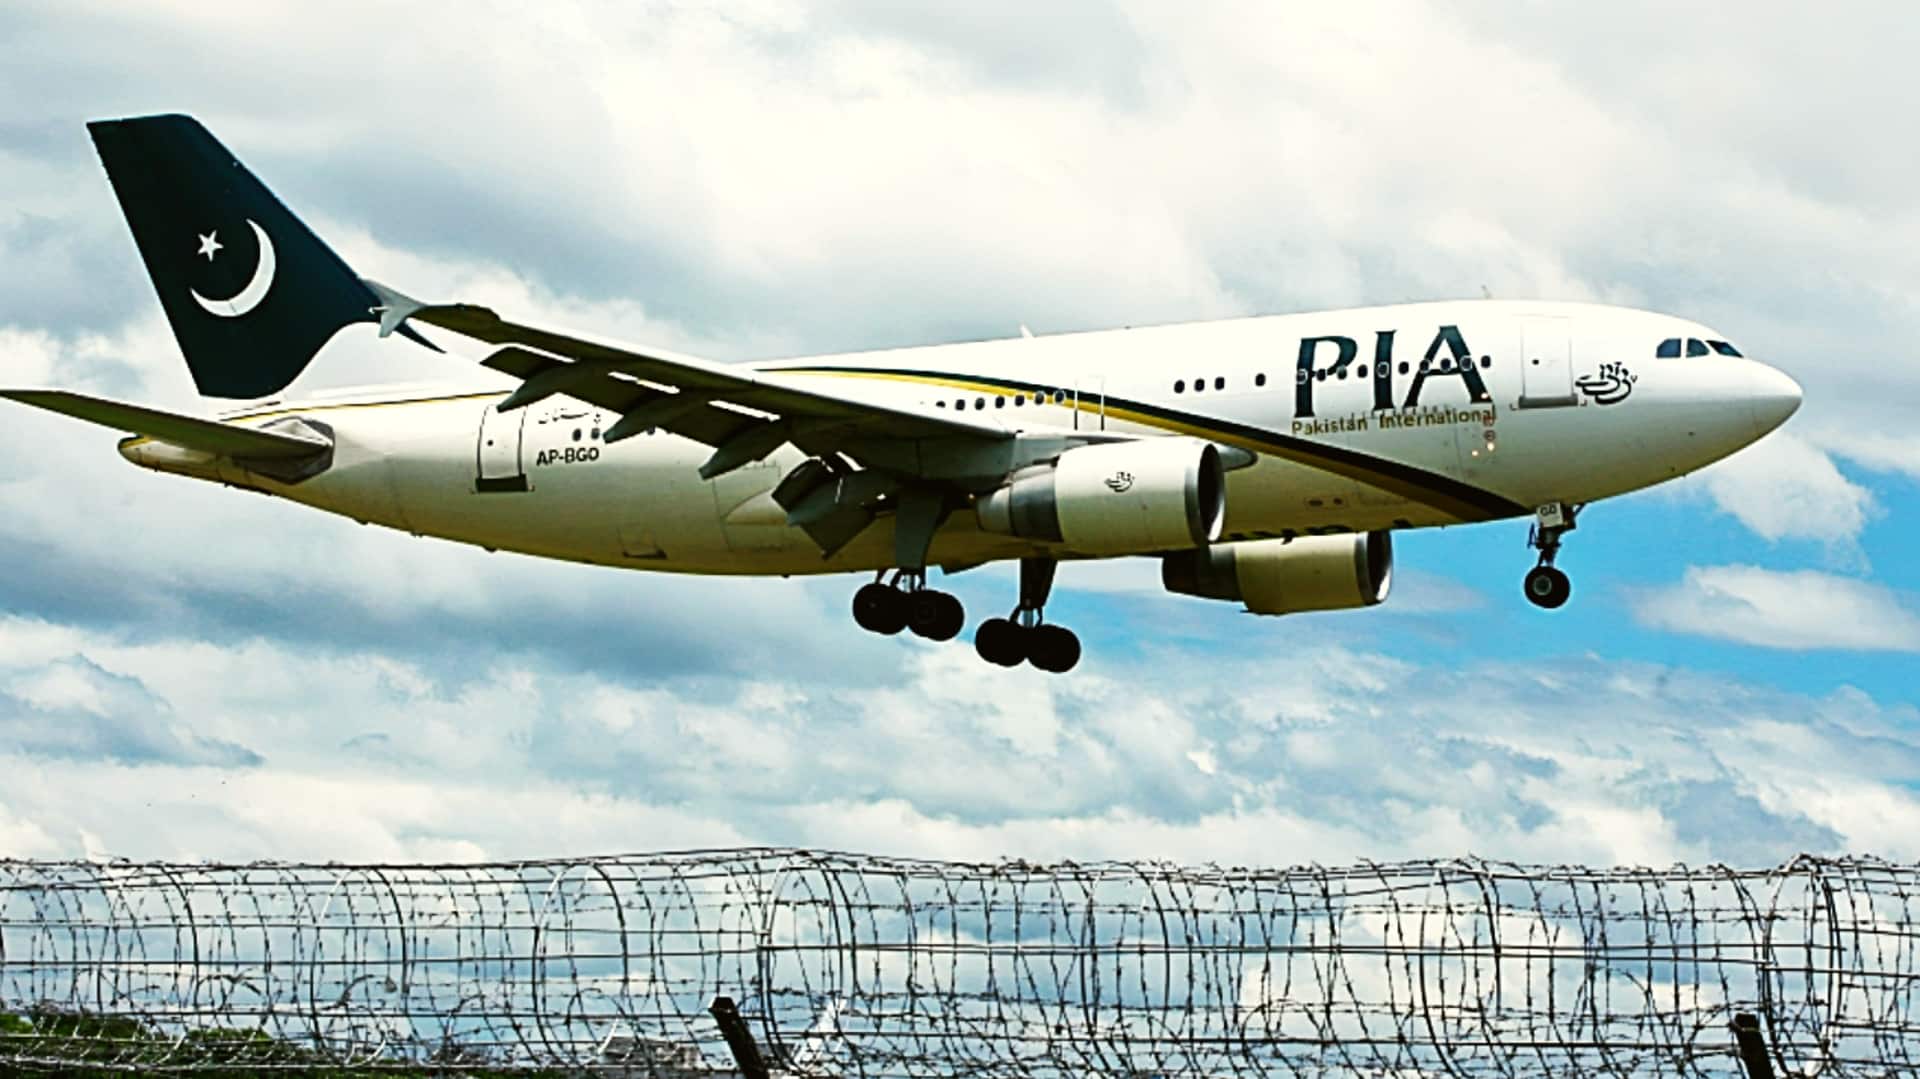 पाकिस्तान: ईंधन न होने के कारण उड़ानें रद्द, यात्रियों ने किया हवाई अड्डे पर हंगामा